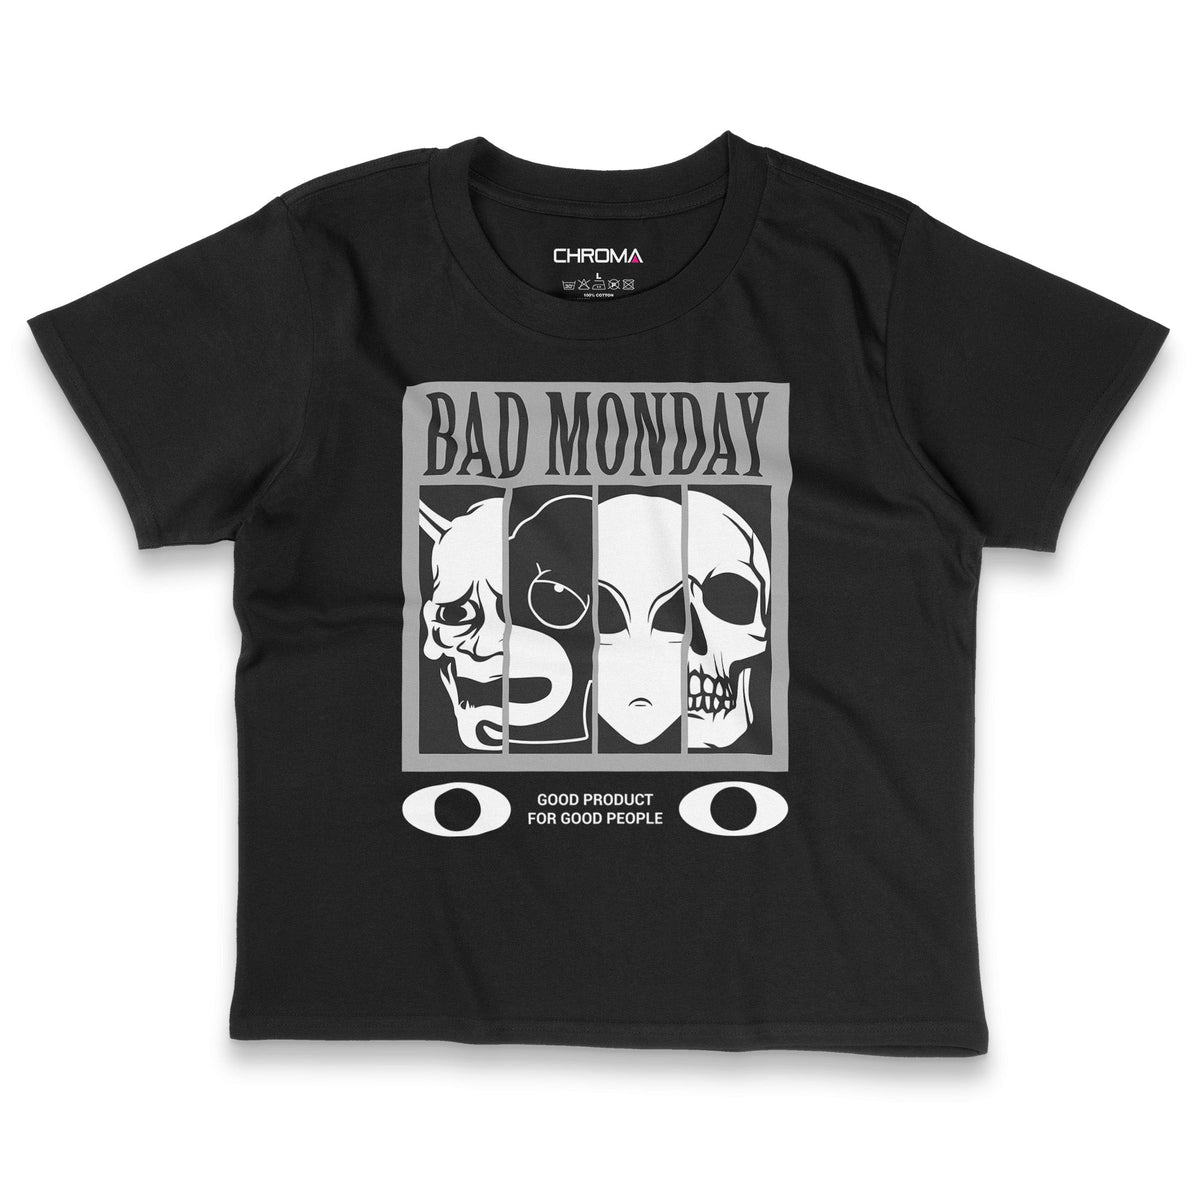 Bad Monday | Women's Cropped T-Shirt Chroma Clothing